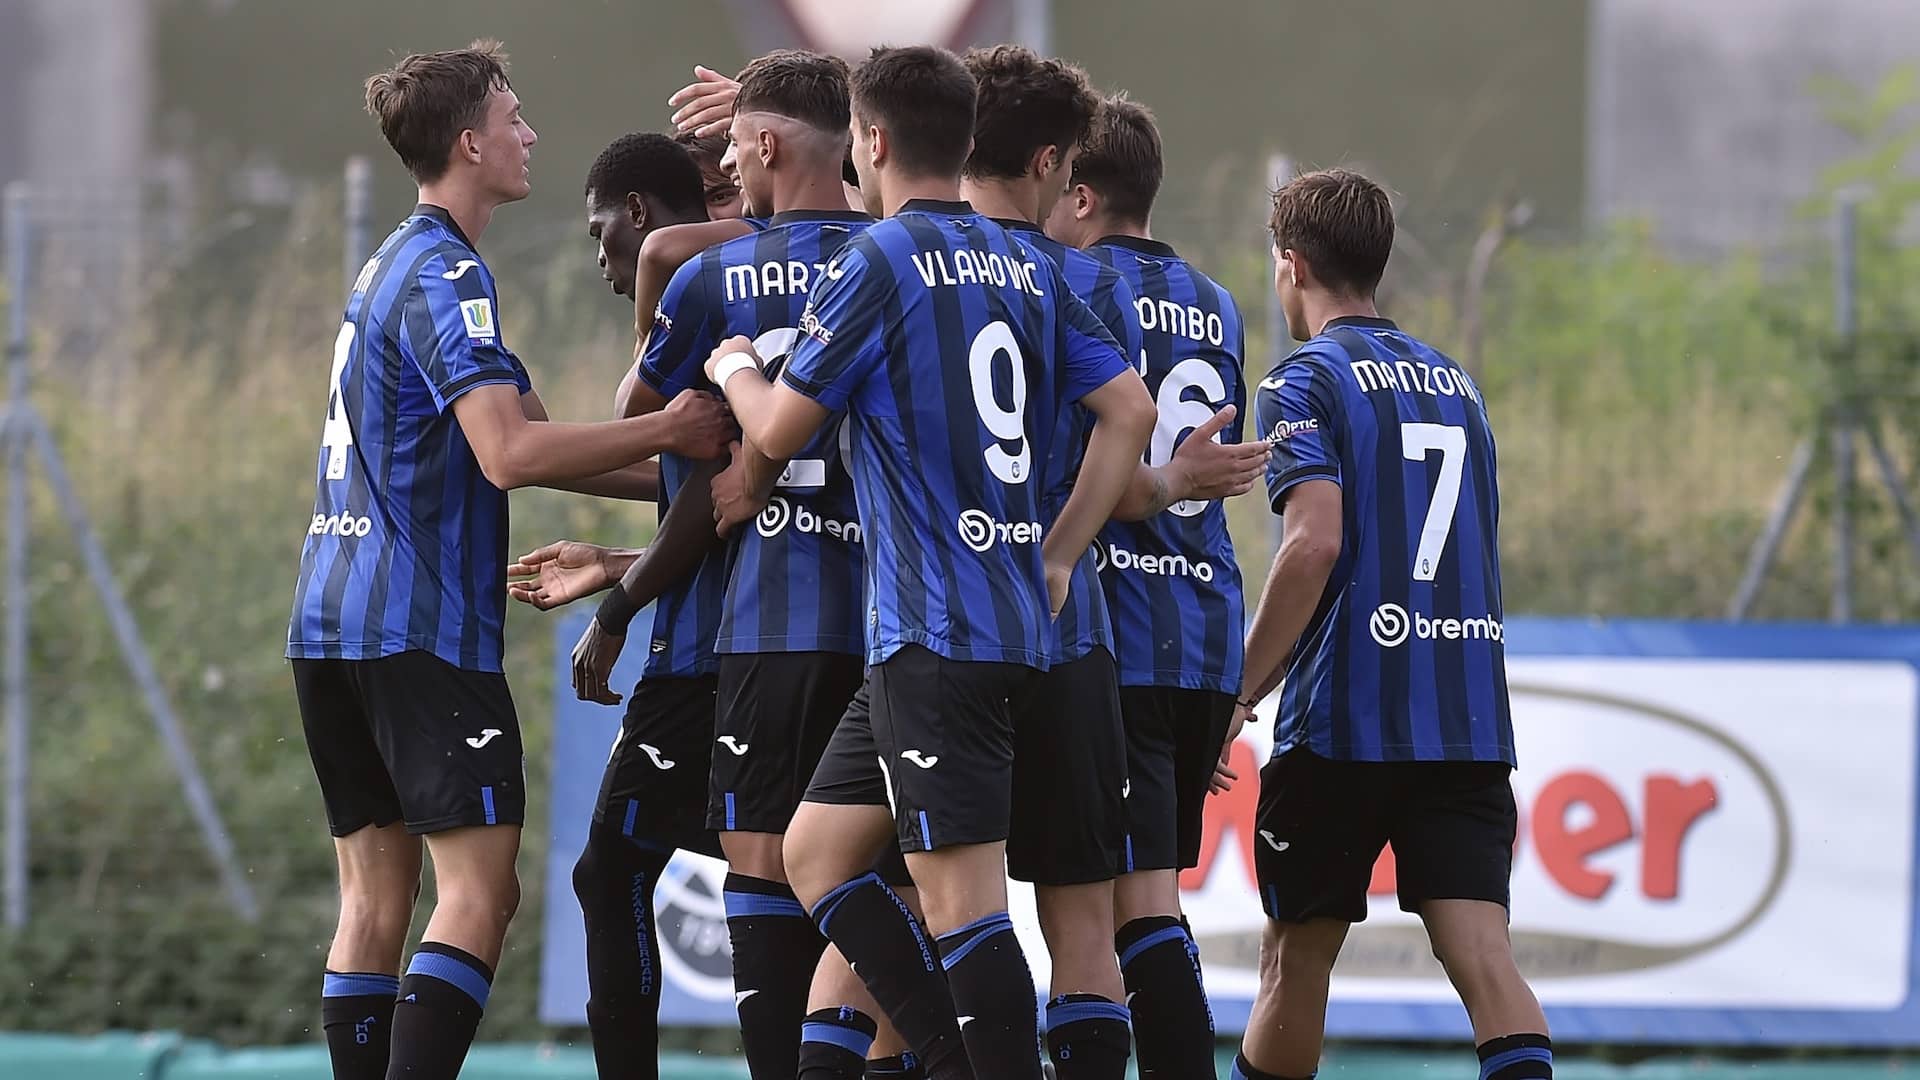 Campionato Primavera 1: Atalanta ko, Sassuolo in semifinale | Football ...